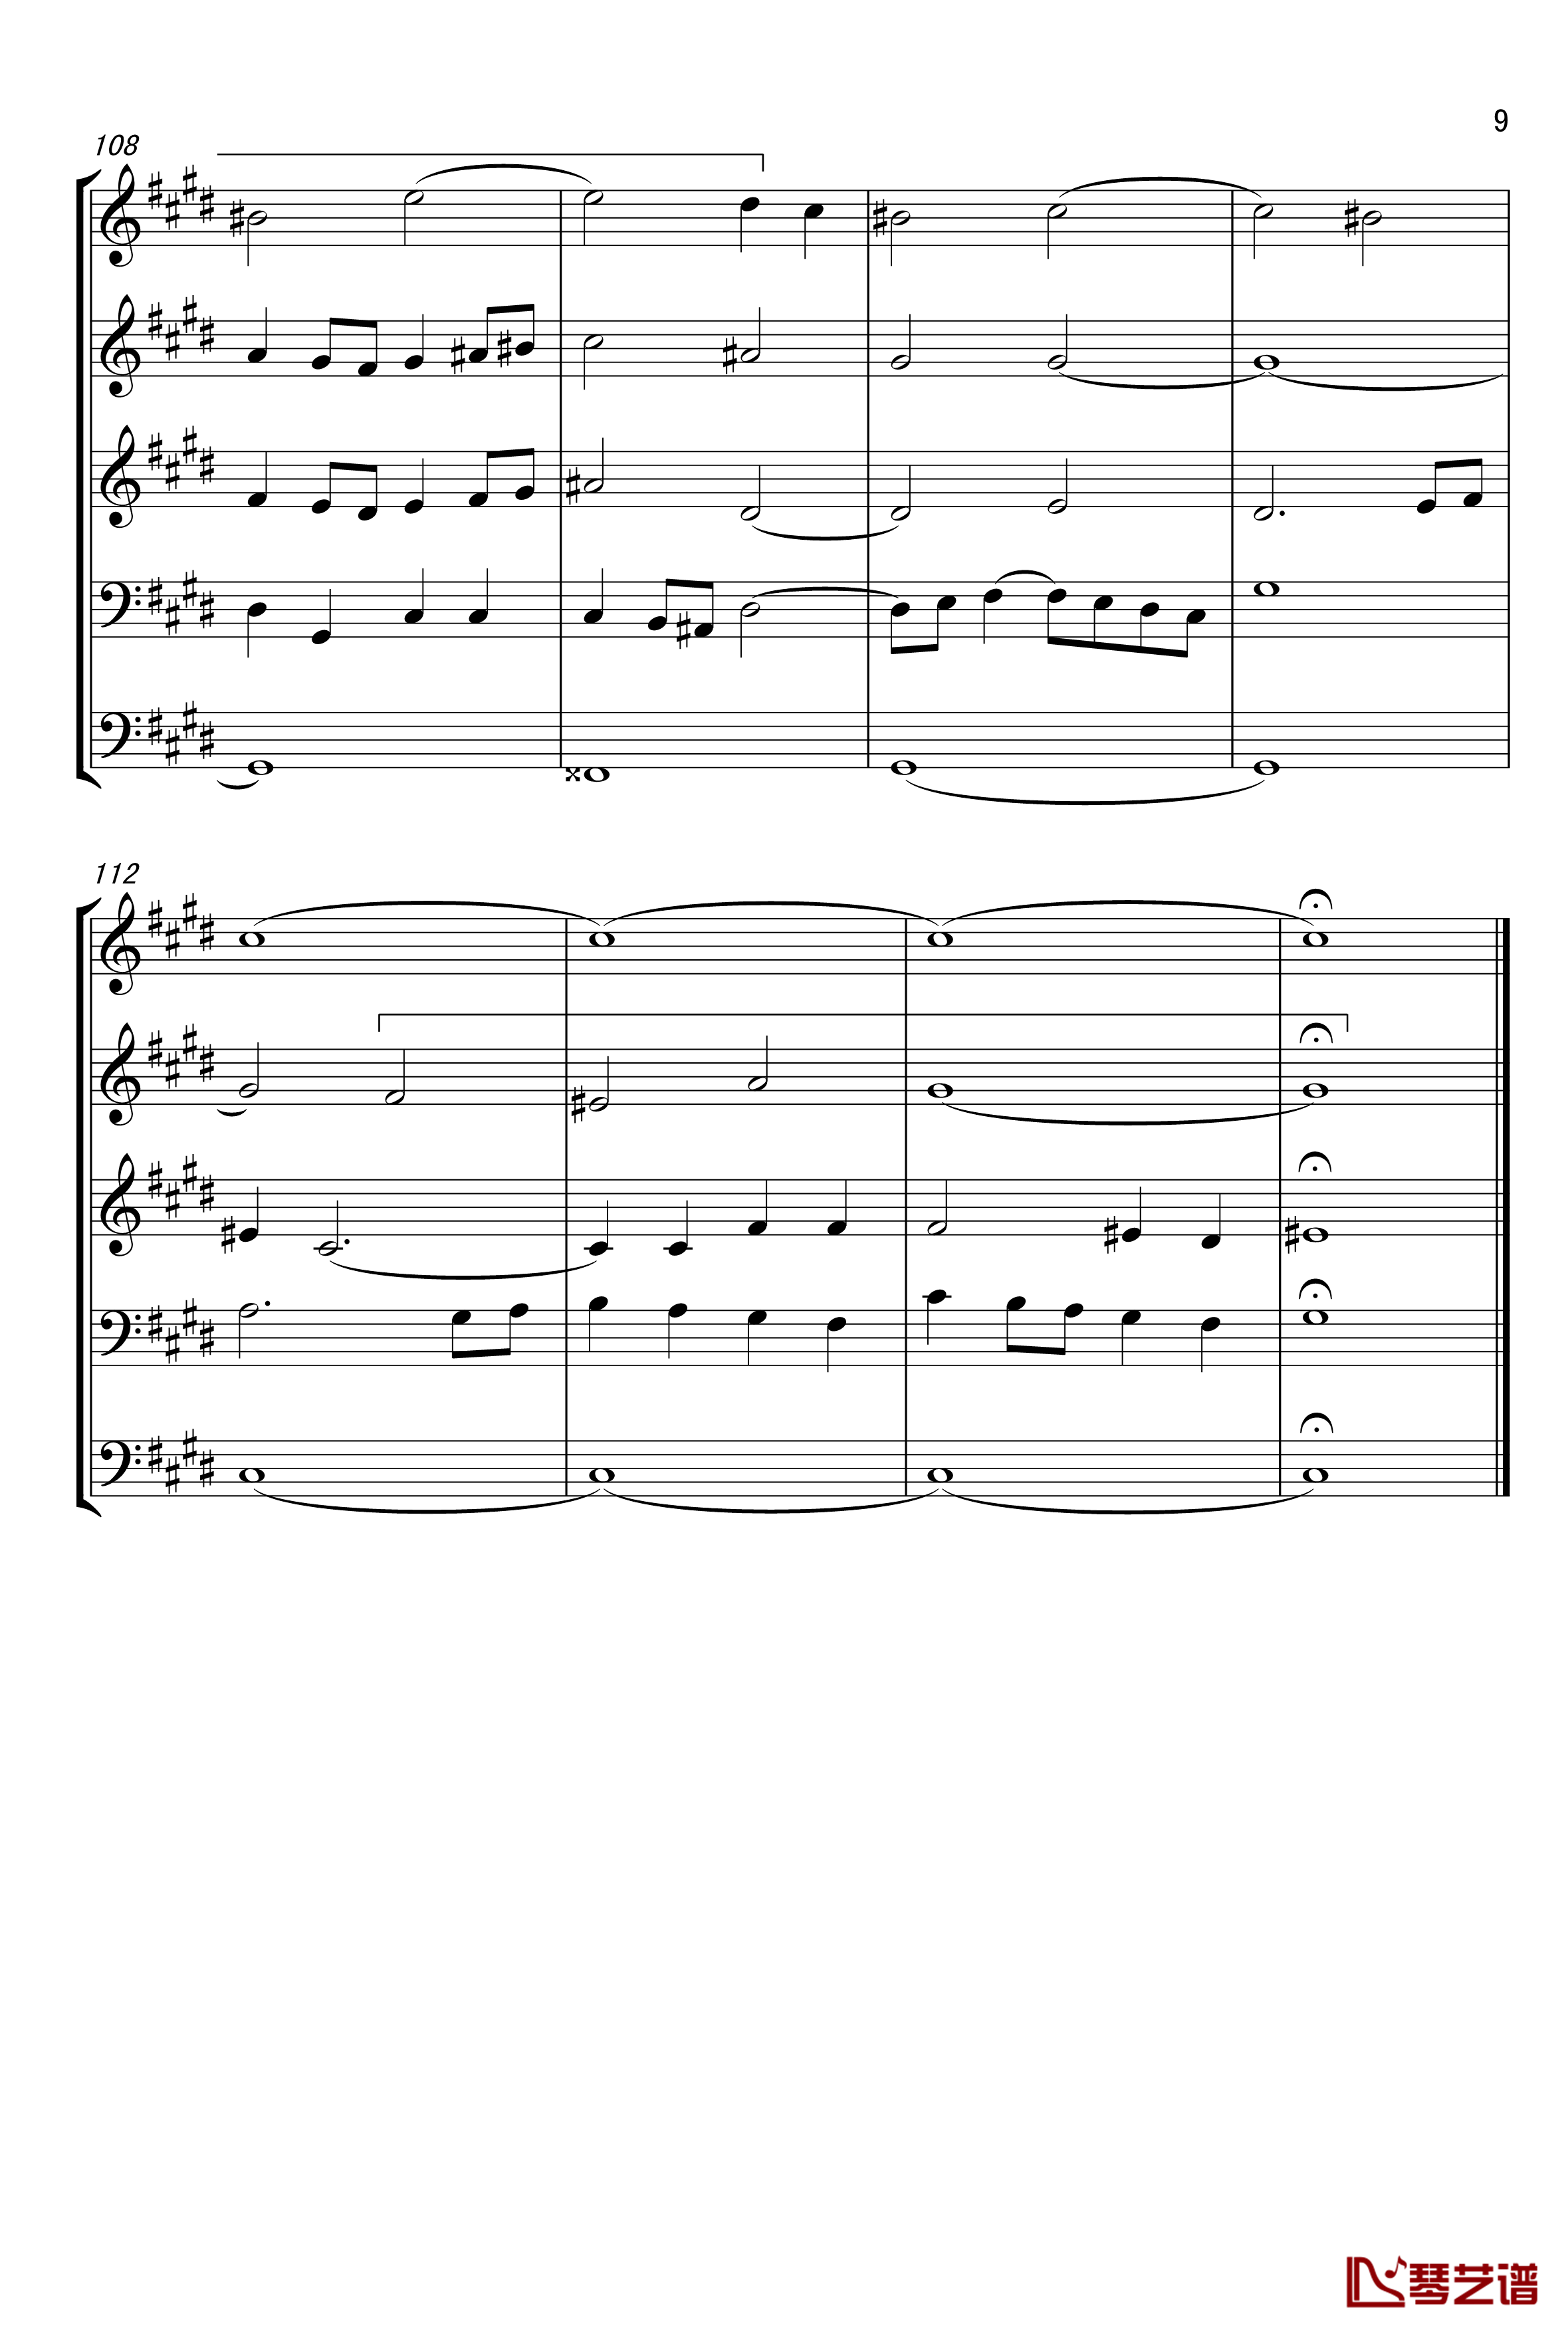 c小调赋格声部分析谱钢琴谱-选自巴赫平均律第一册-巴赫9